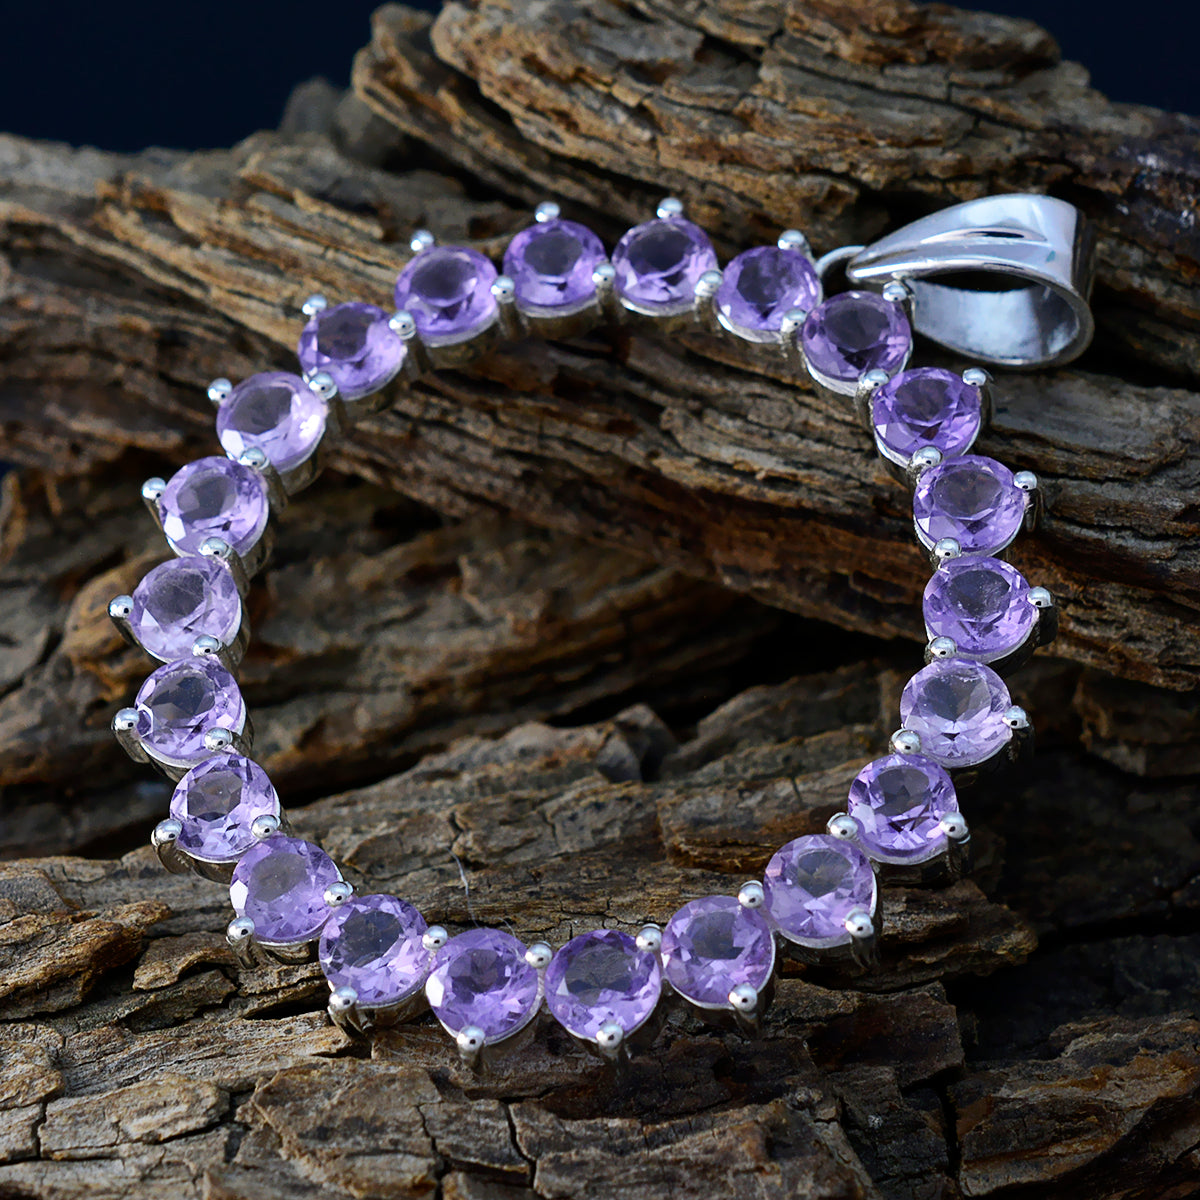 Riyo Lovely Gems runder facettierter violetter Amethyst-Silberanhänger, Geschenk zur Verlobung